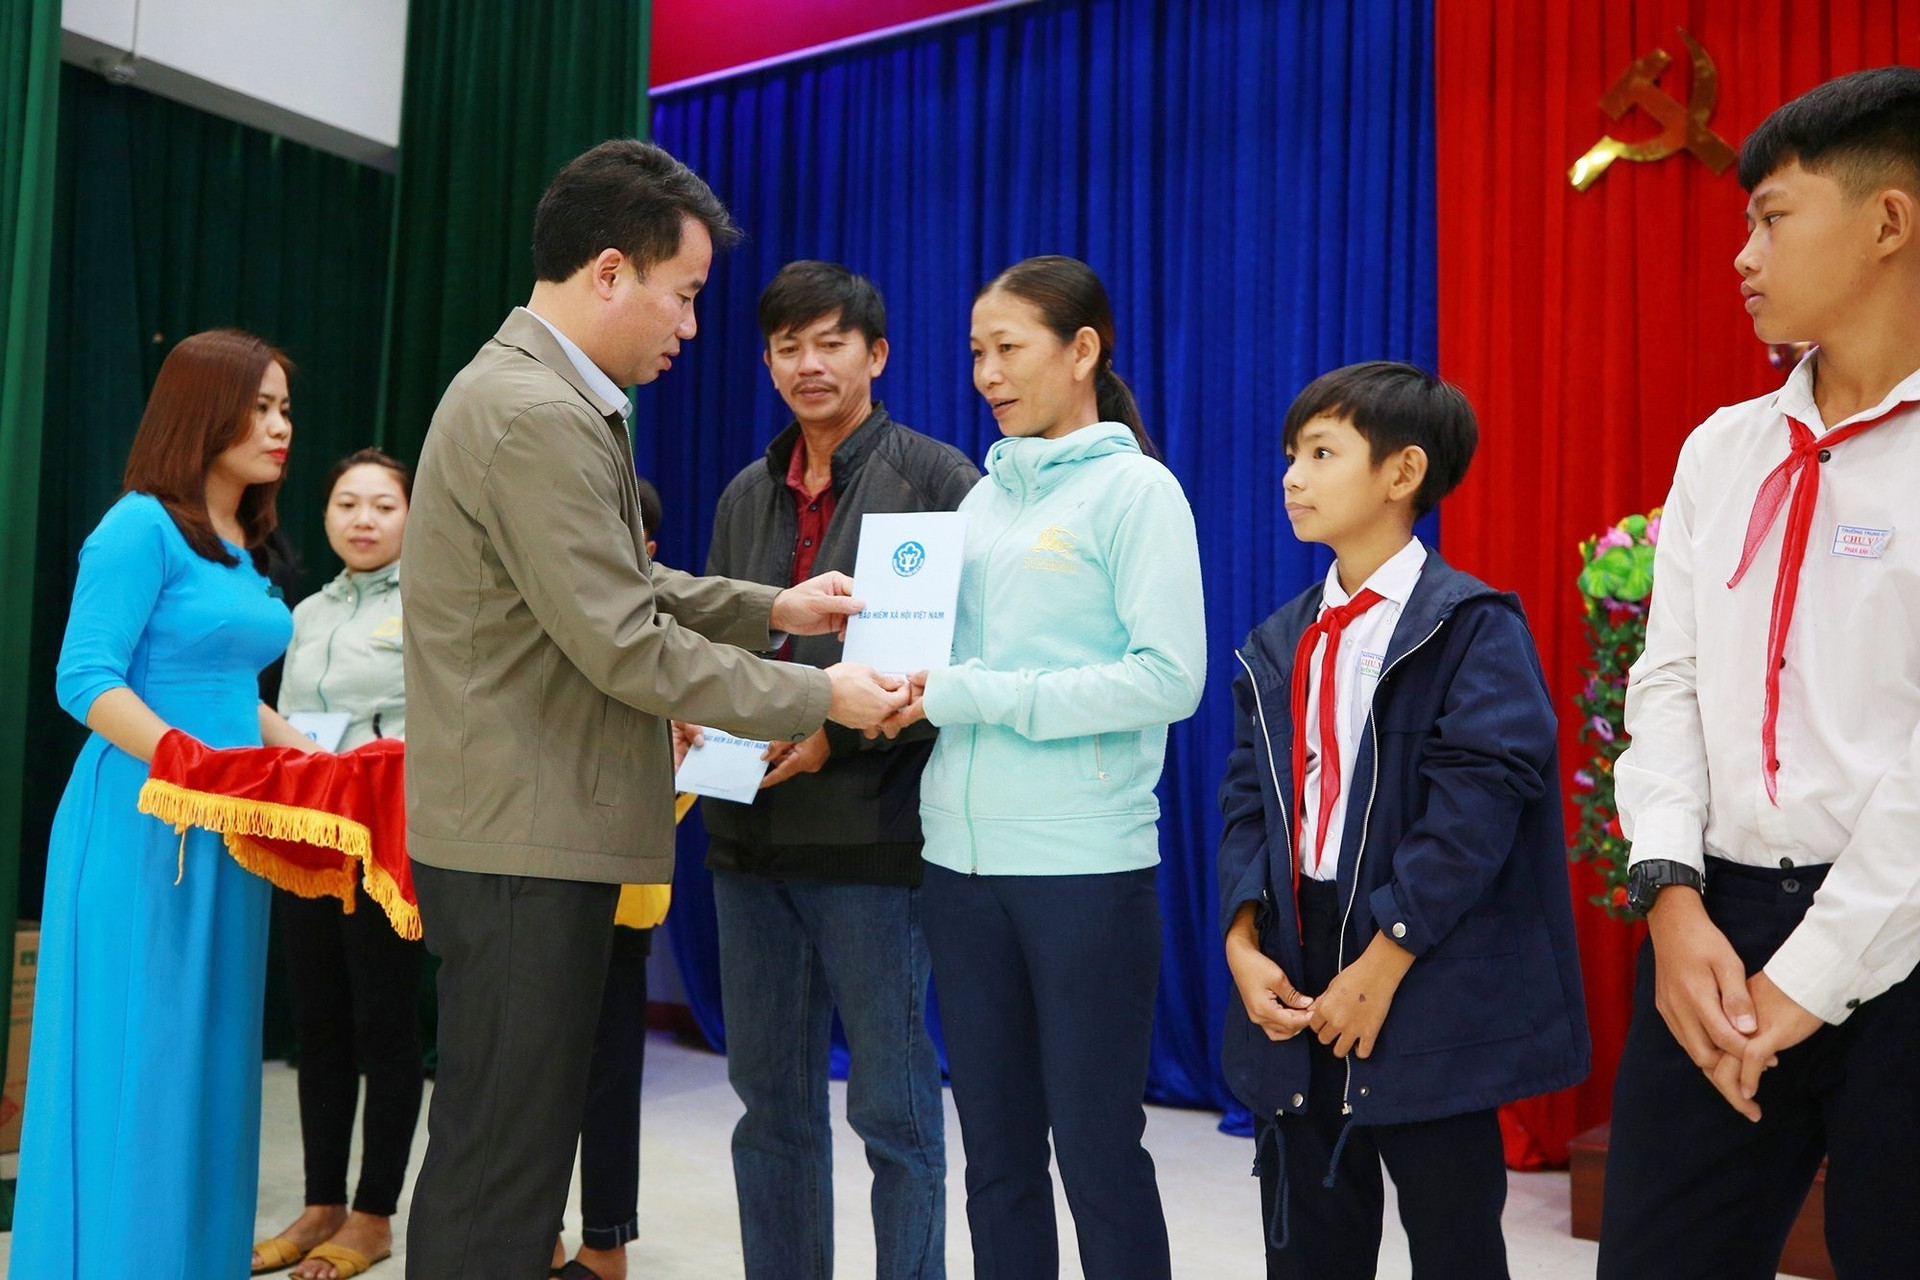 Tổng Giám đốc BHXH Việt Nam Nguyễn Thế Mạnh tặng thẻ BHYT cho người dân khó khăn ở huyện Thăng Bình. Ảnh: D.L